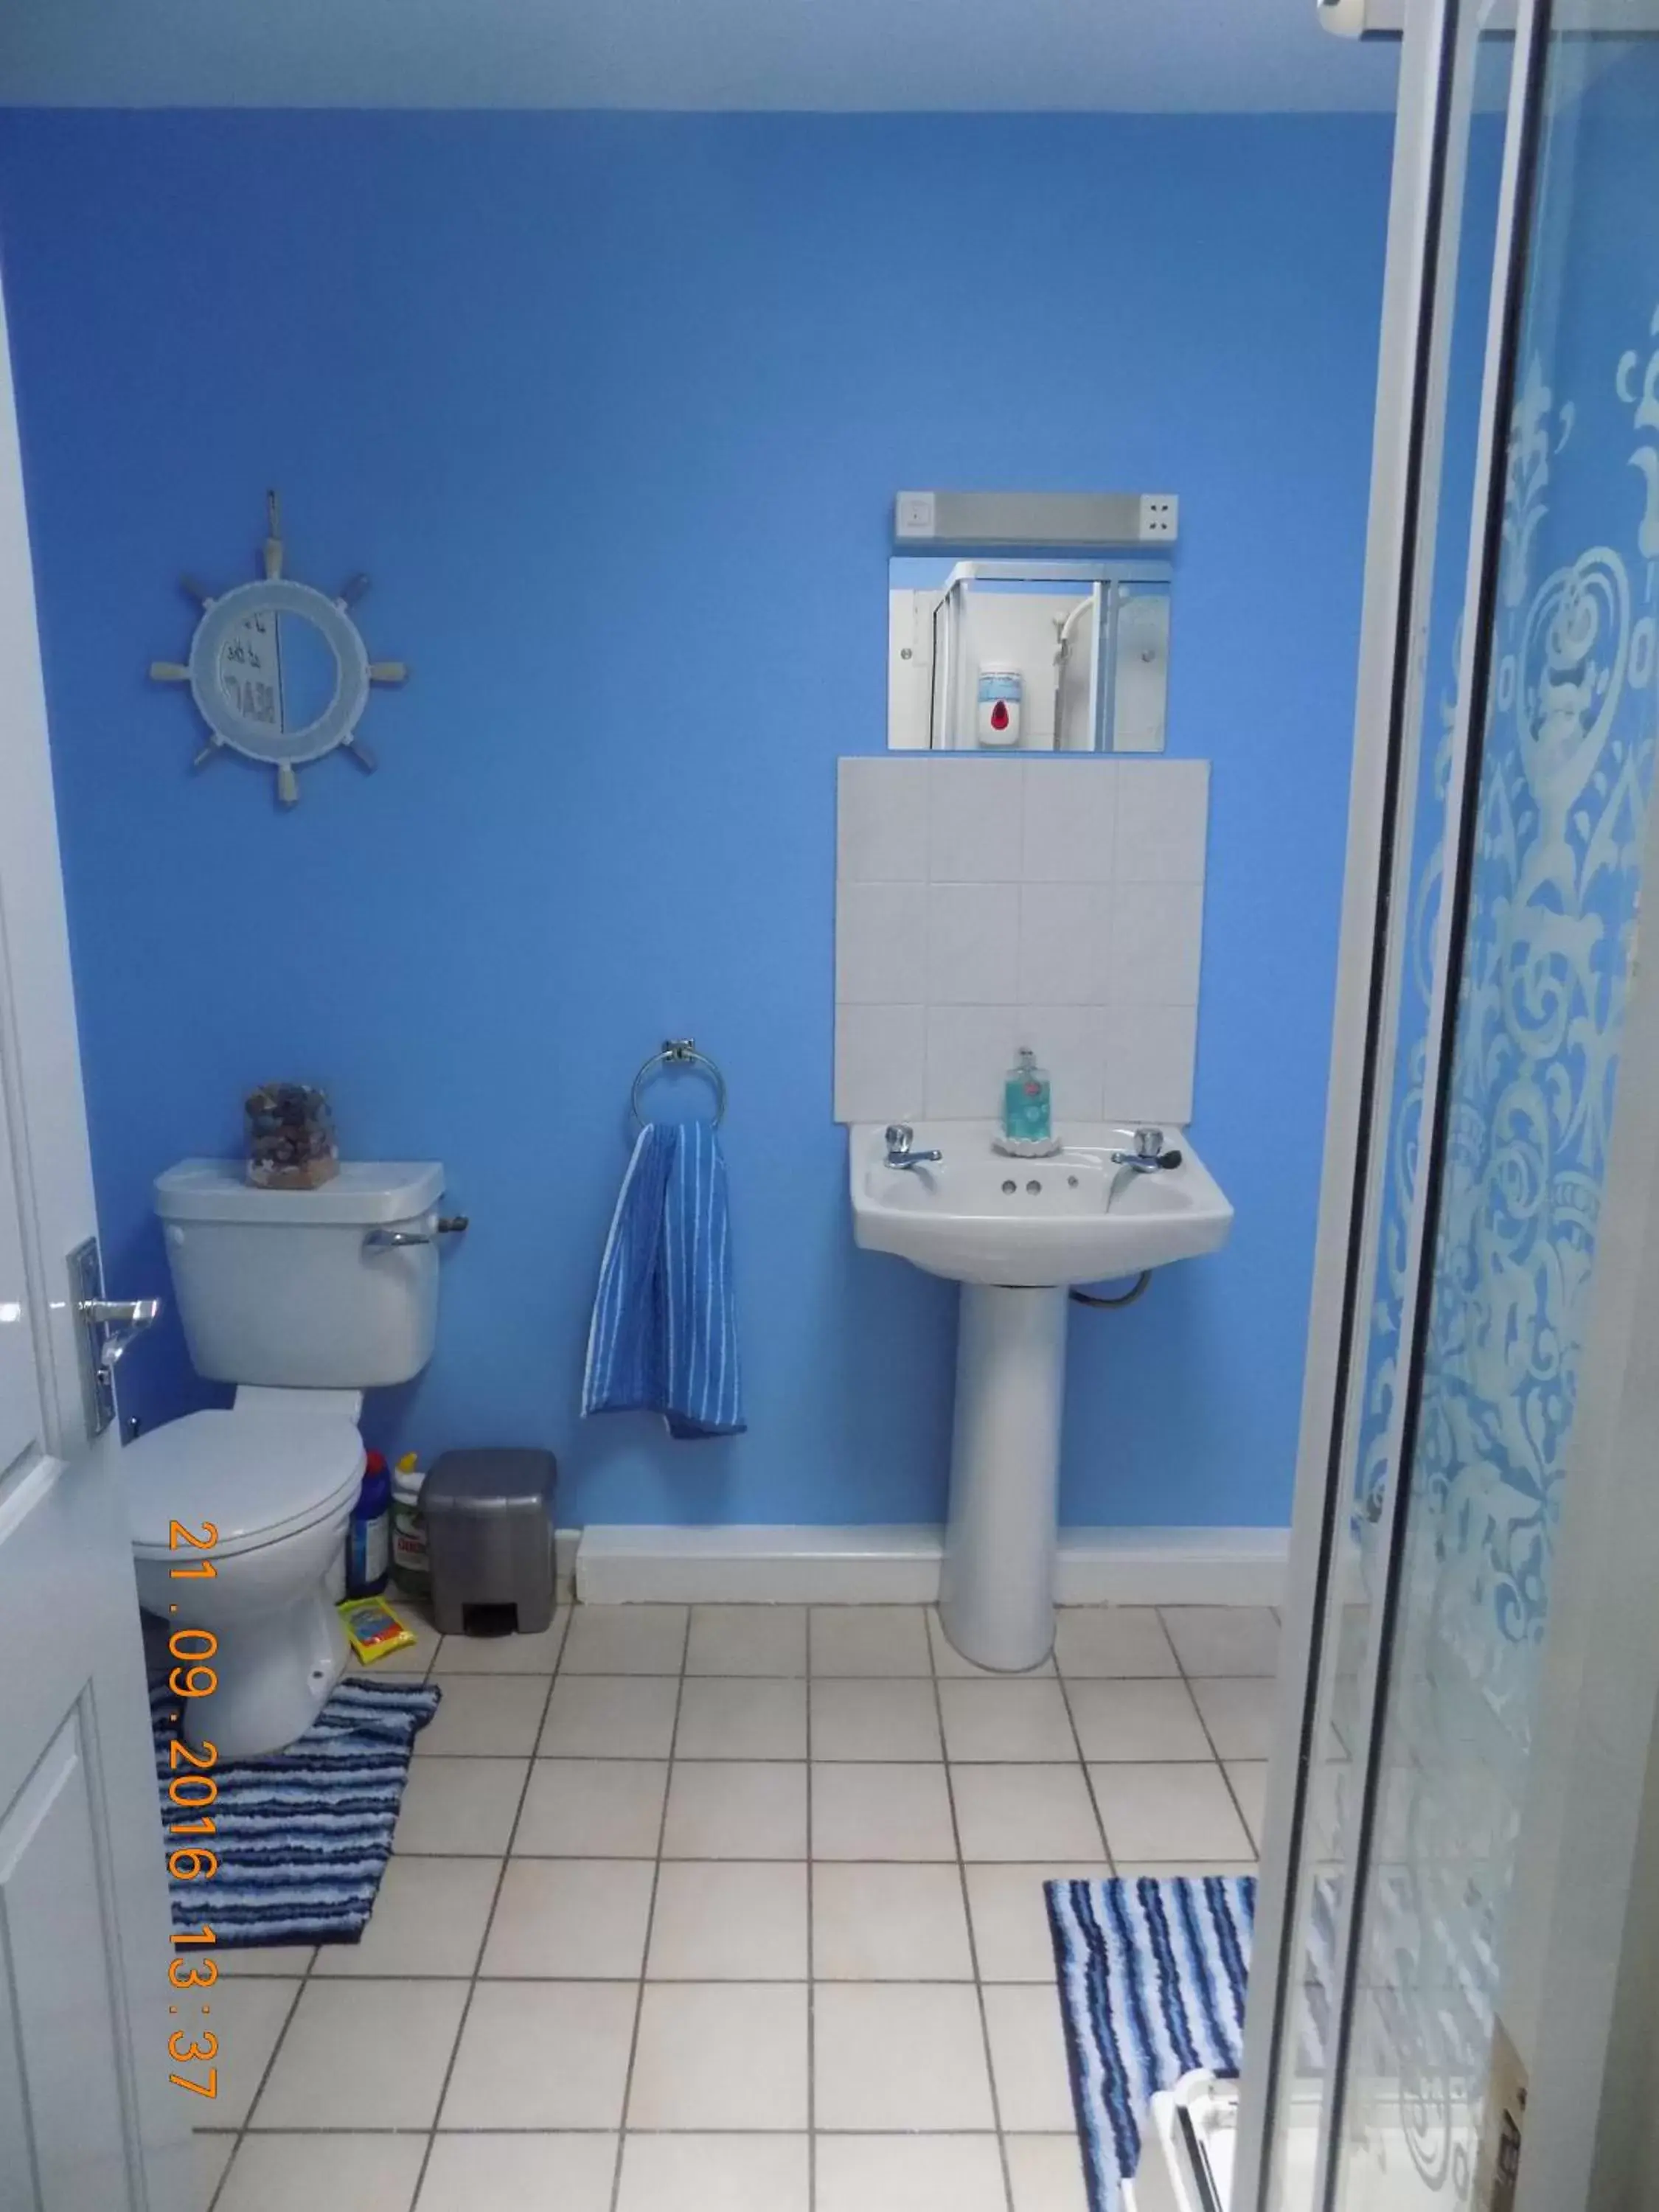 Bathroom in Cú Chulainns Accommodation